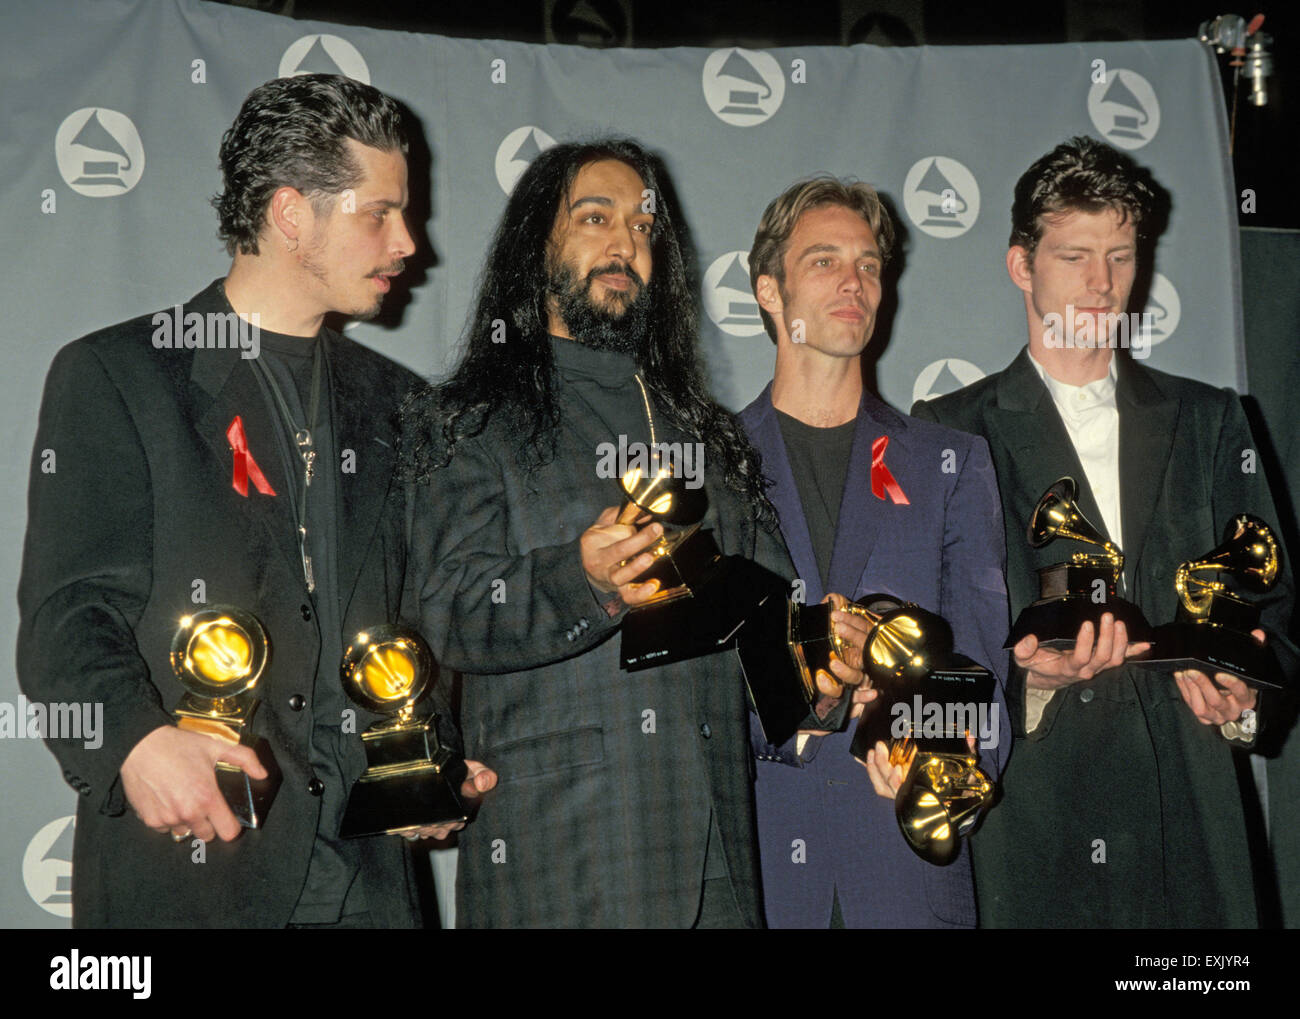 No te digo que lo superes....Iguálamelo!!! El-grupo-de-rock-estadounidense-de-soundgarden-en-1995-foto-jeffrey-mayer-exjyr4